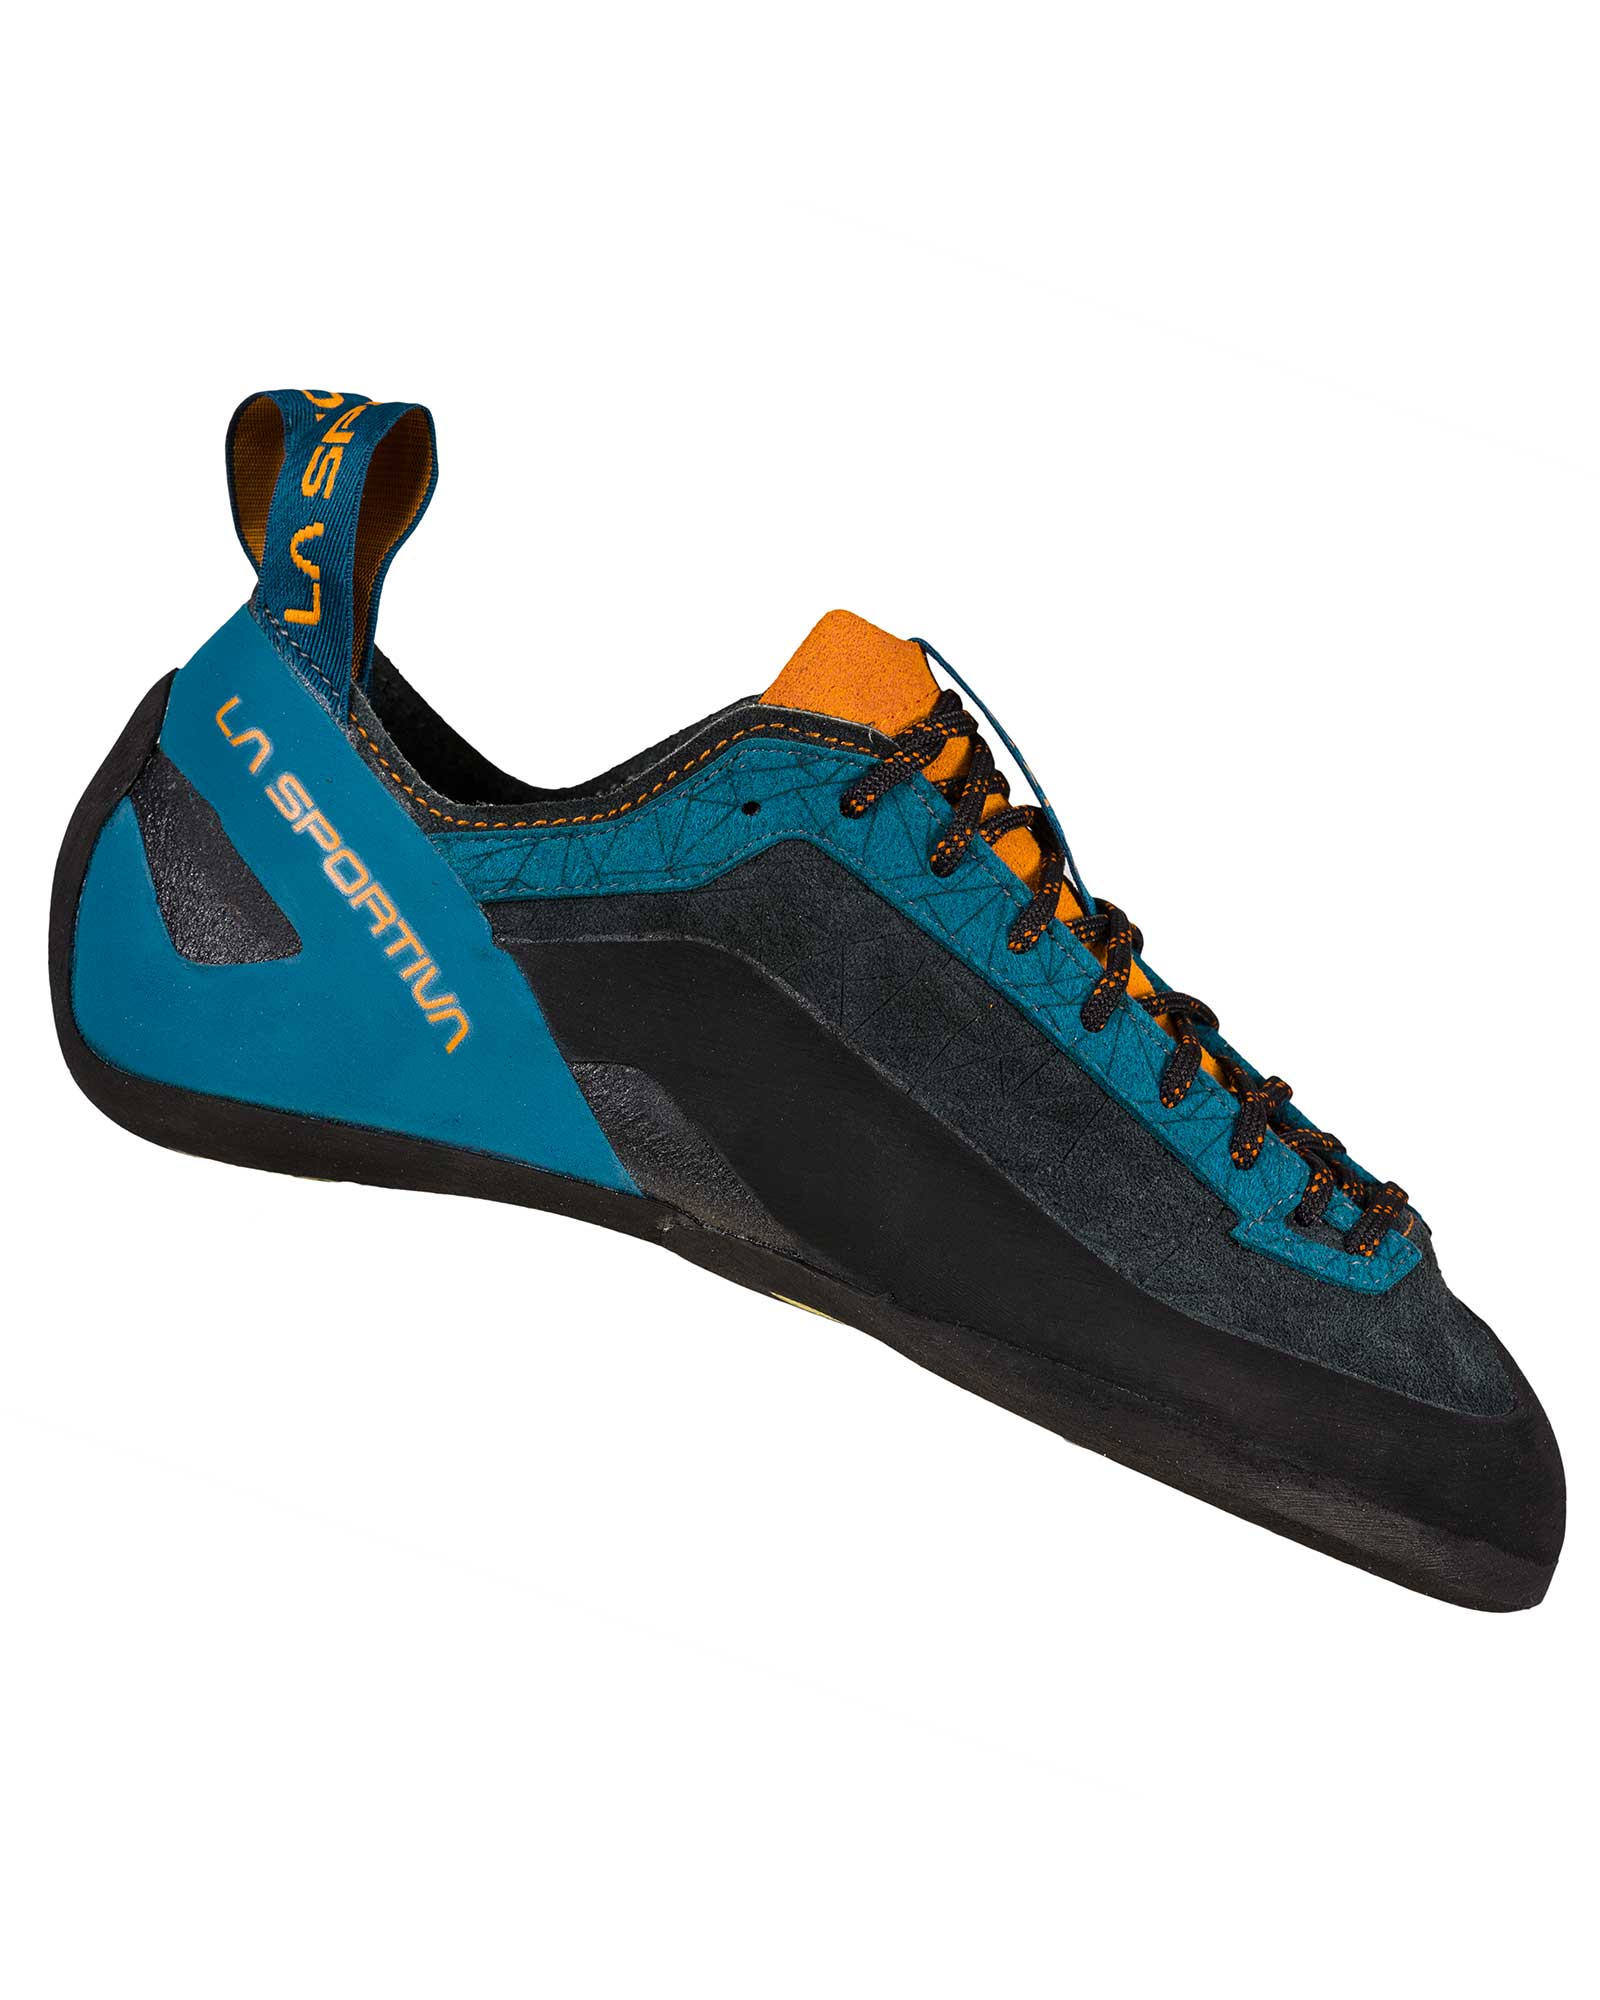 La Sportiva Finale Men’s Shoes - Space Blue/Maple EU 45